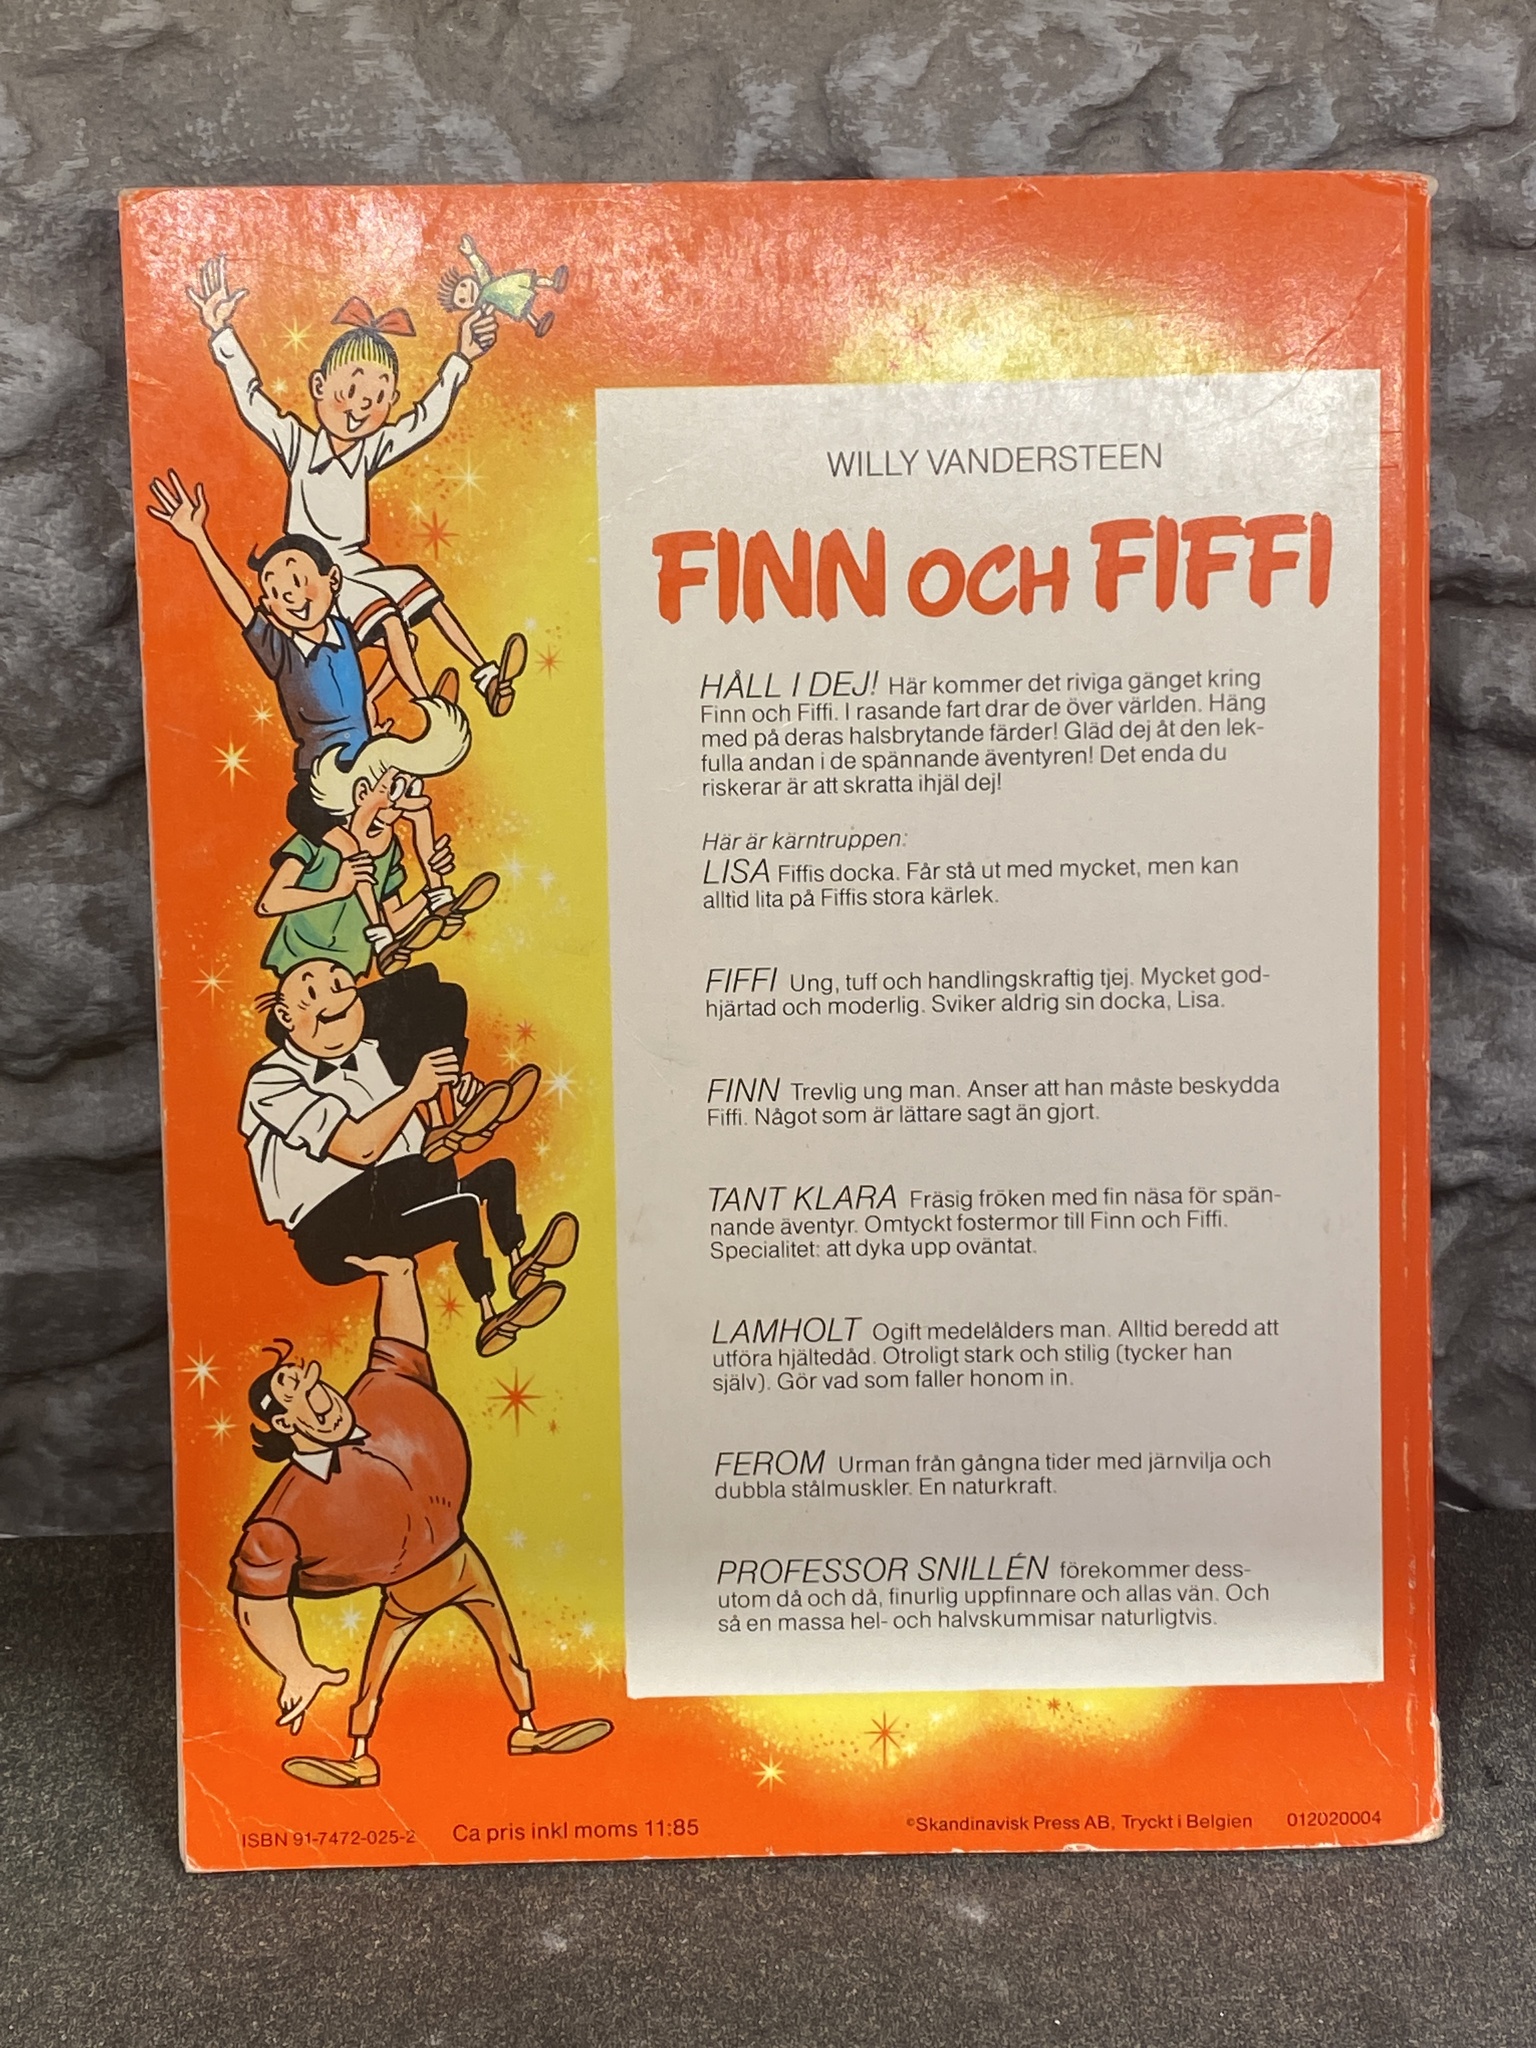 Seriealbum Finn och Fiffi: Det surrande ägget av Willy Wandersteen